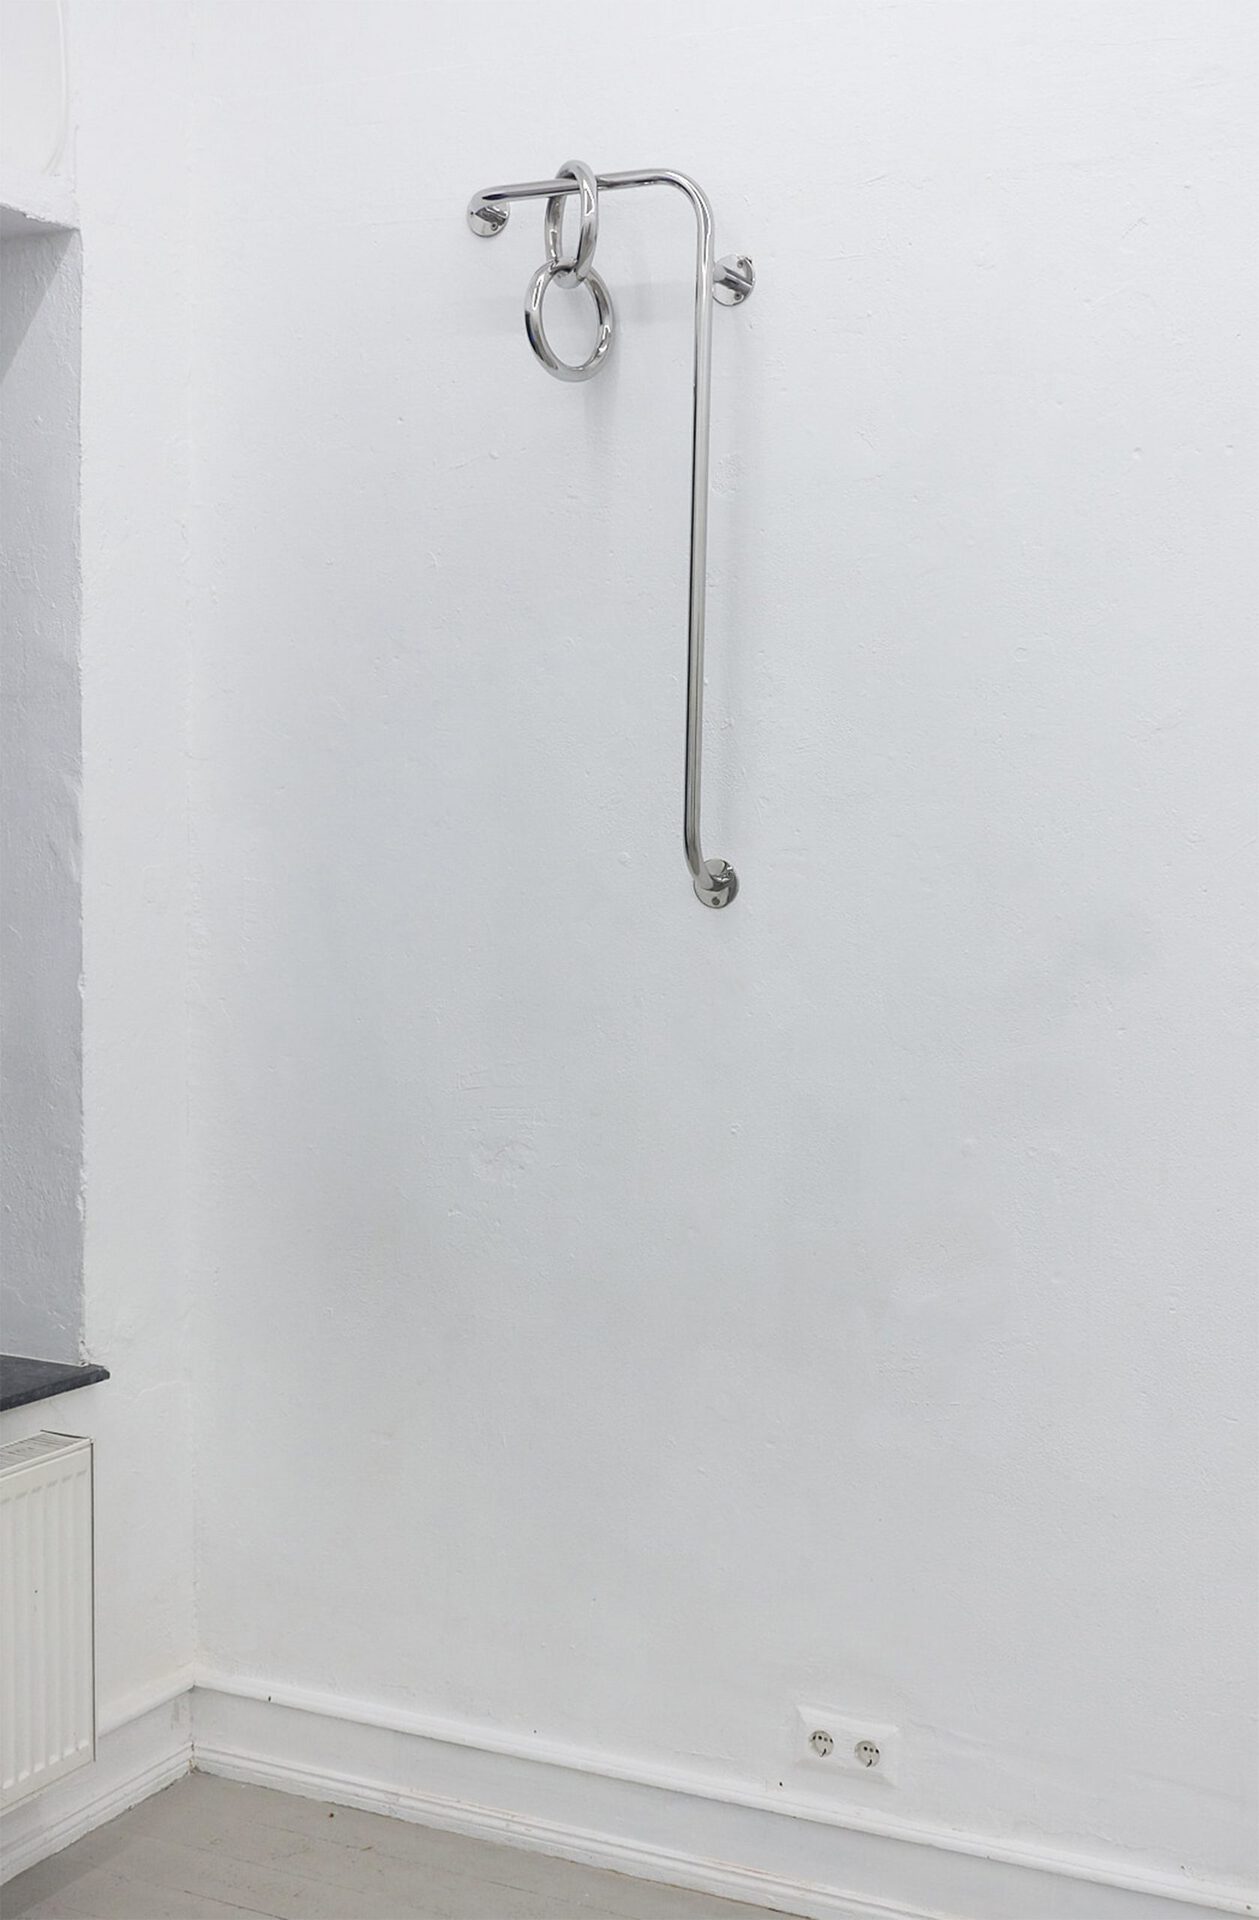 Zuza Golińska, Piercer 2/47, 2018, Stainless steel, 105 x 47 x 18 cm